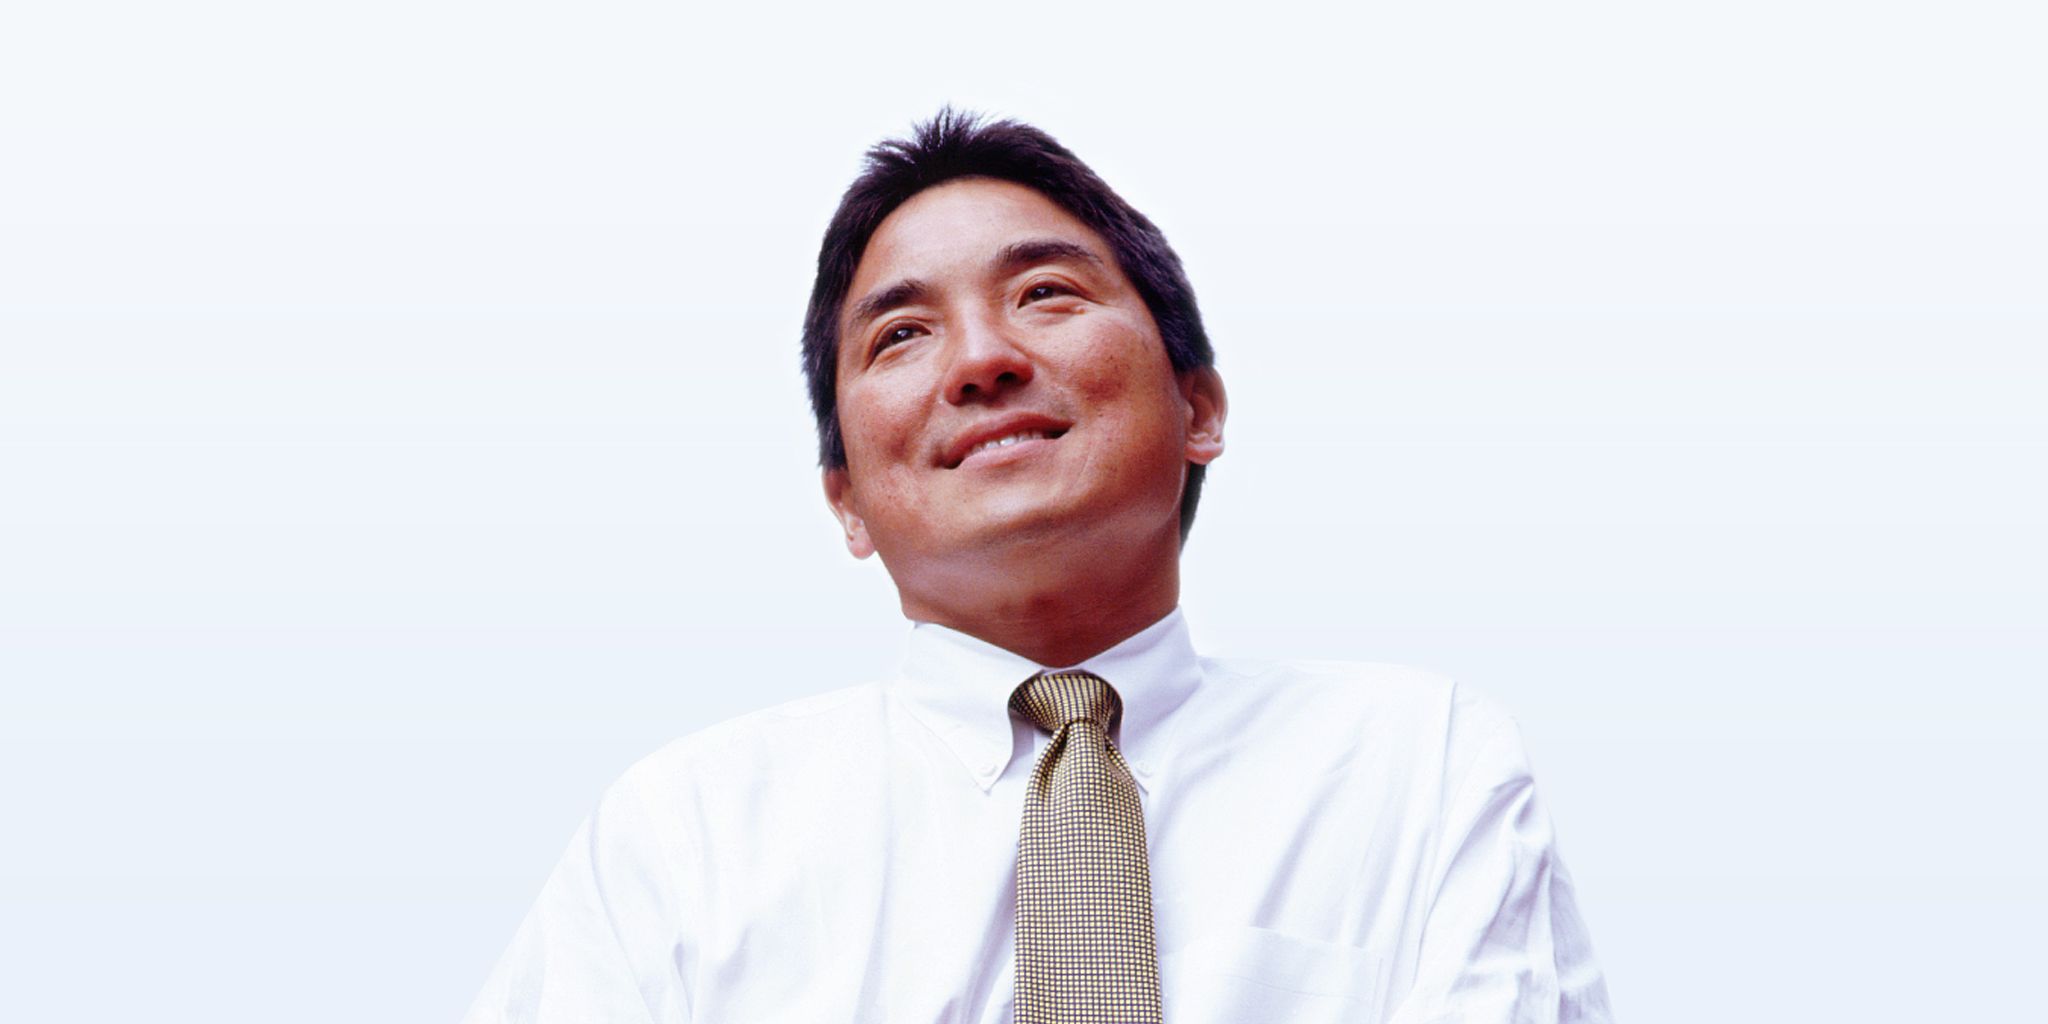 Guy Kawasaki smiling